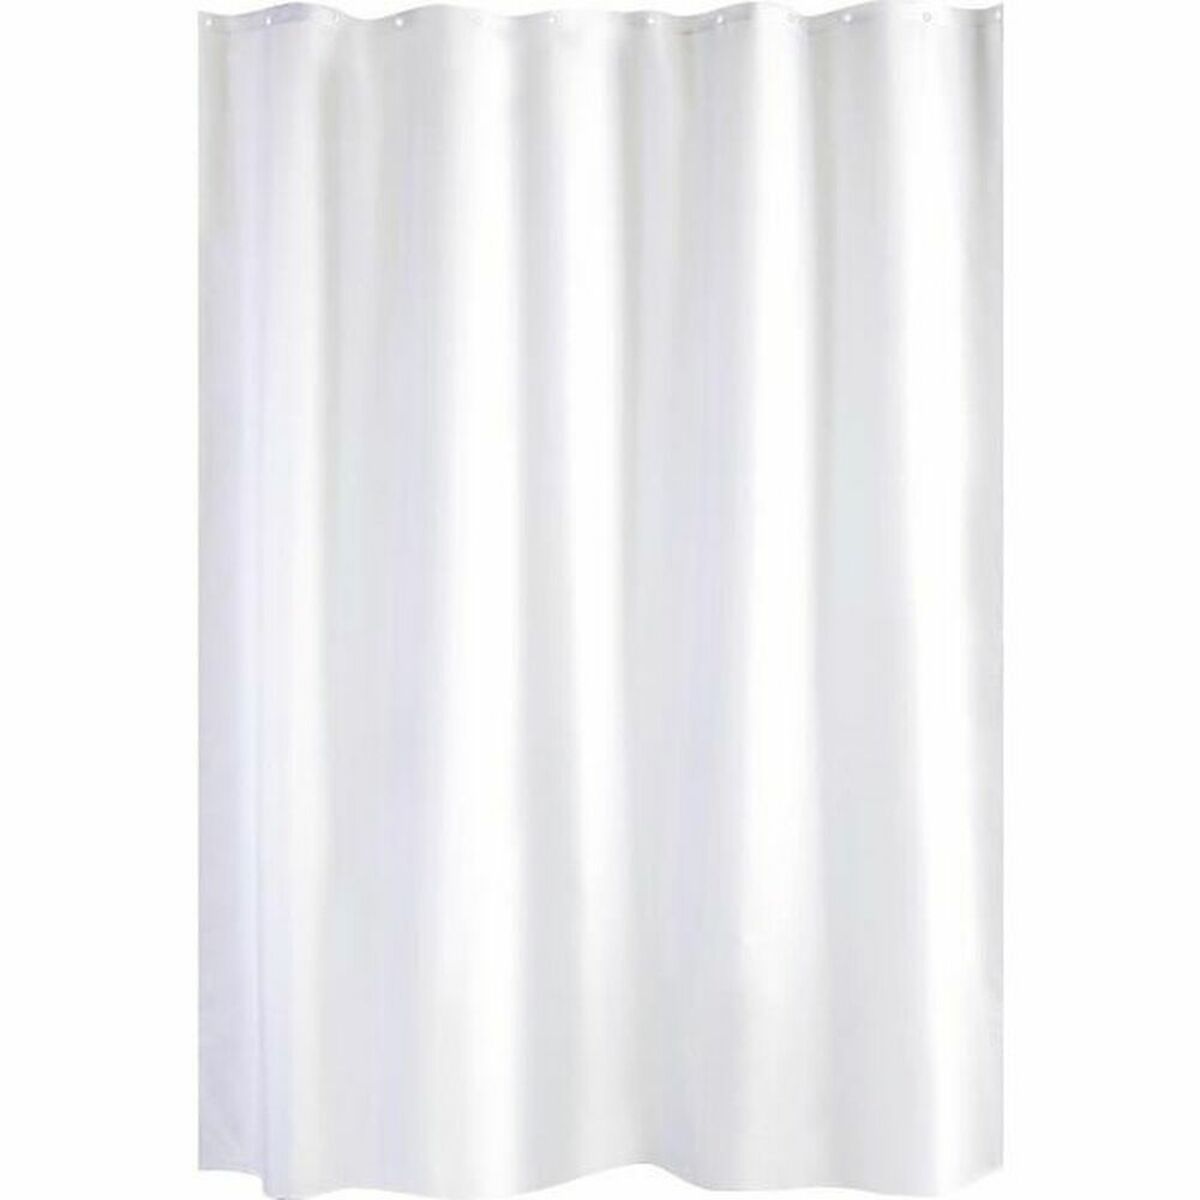 Rideau de Douche Gelco Polyester Blanc 180 x 200 cm